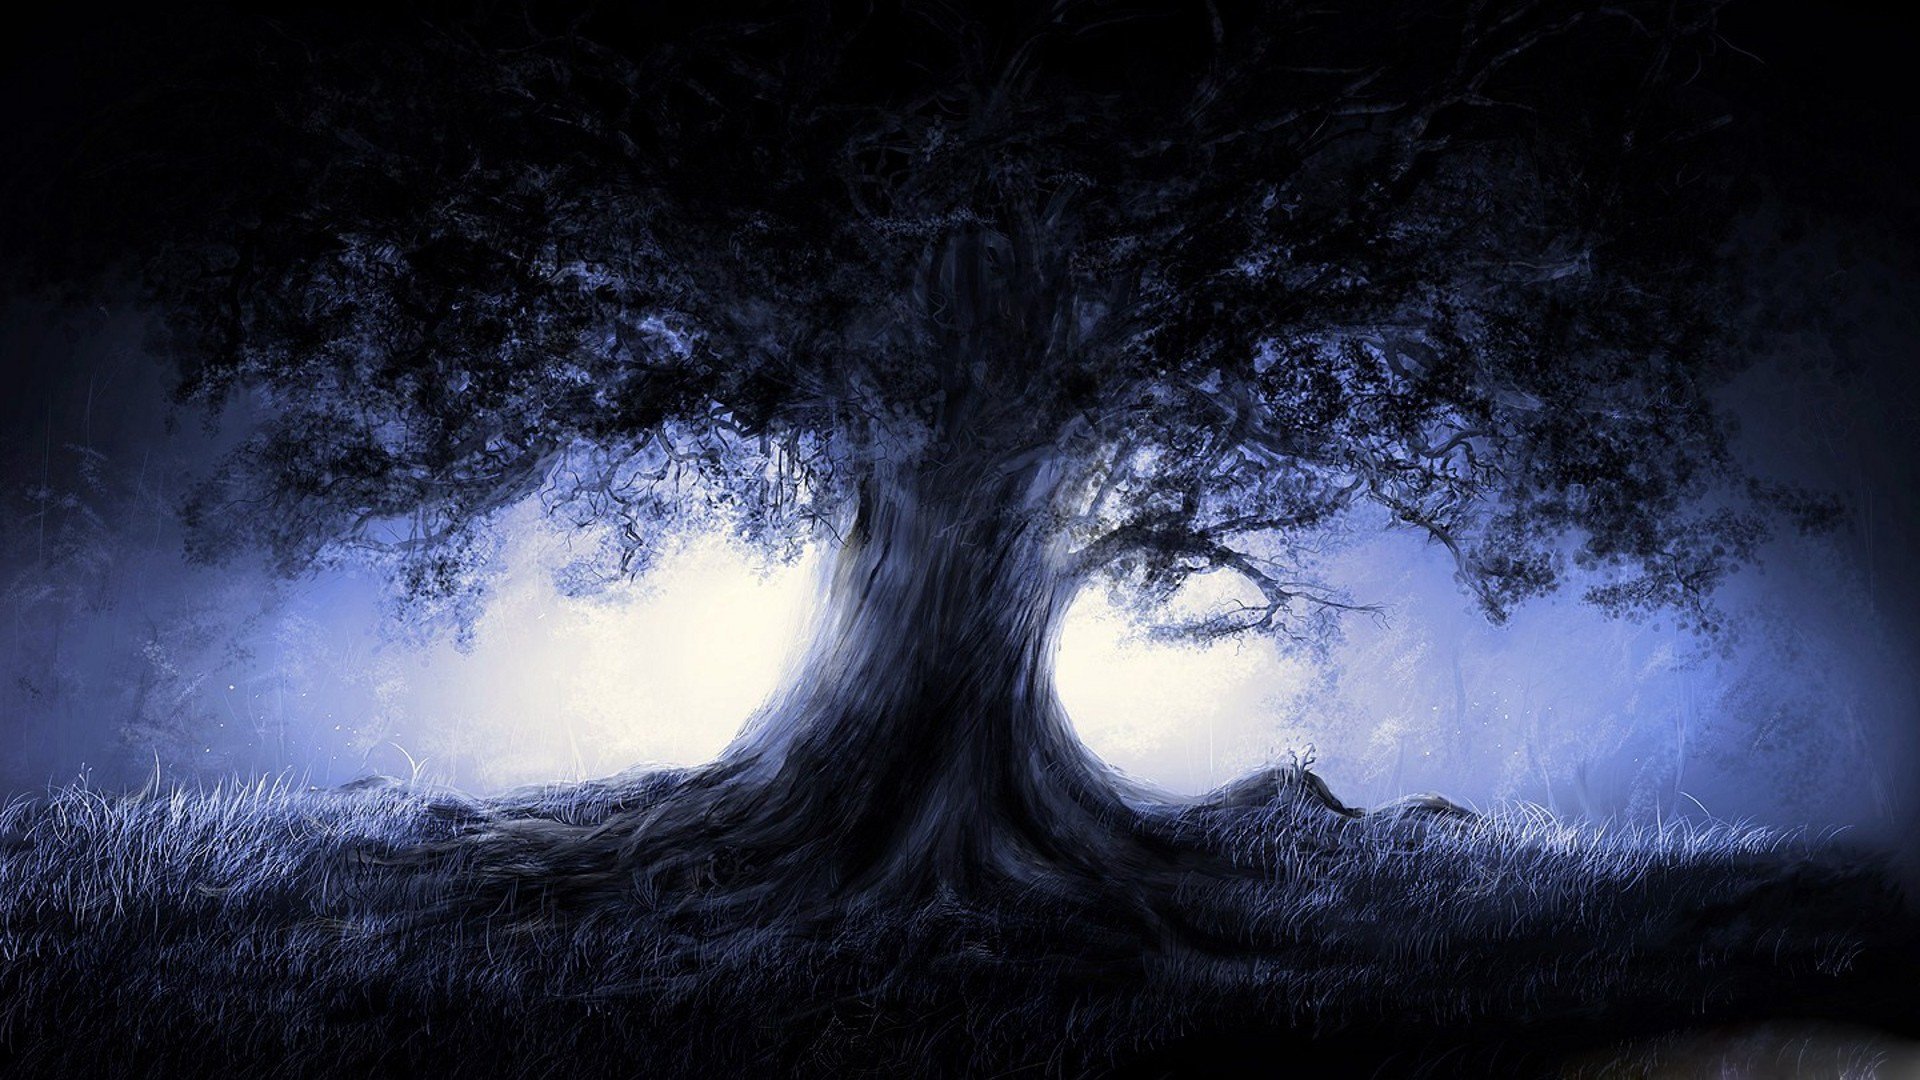 Wallpaper, 1920x1080 px, dark, forest, light, Moon, tree 1920x1080